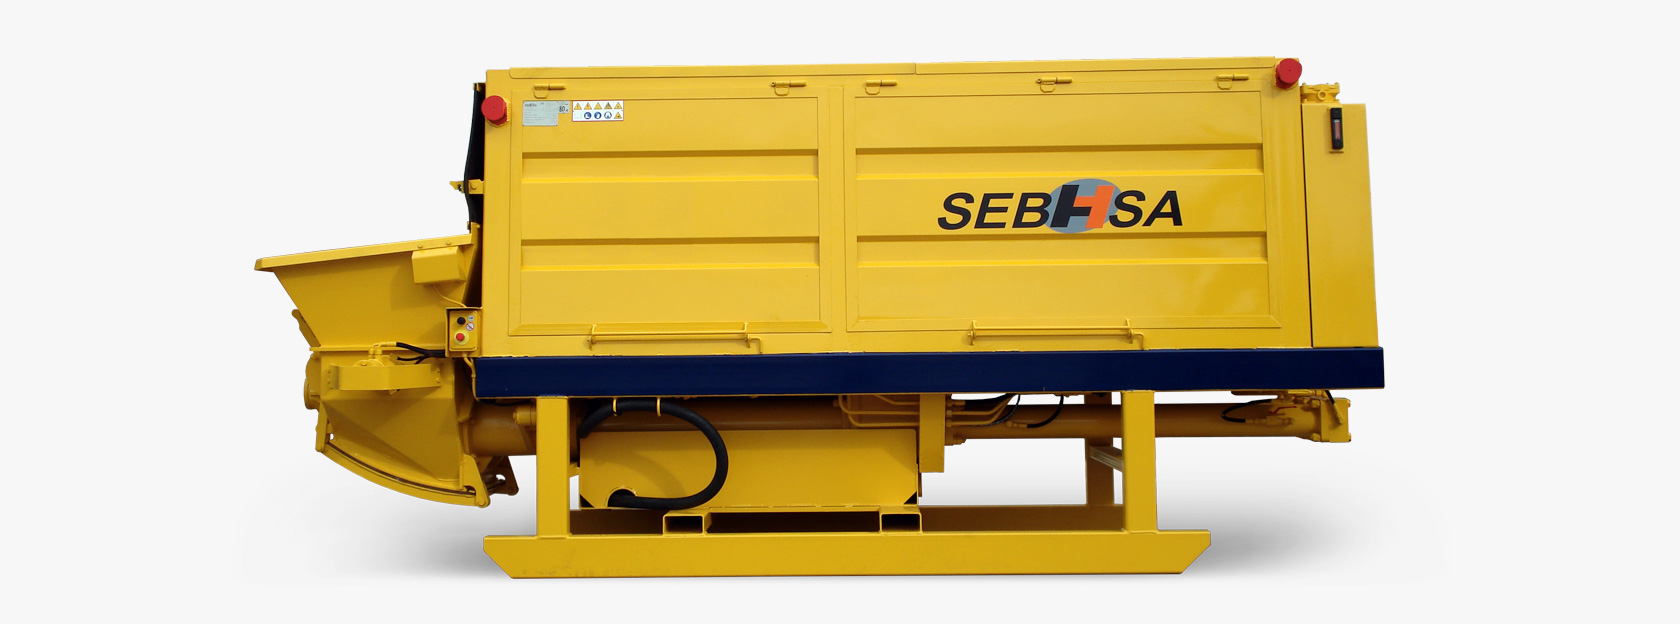 Sebhsa ofrece soluciones de bombeo de mortero de alta calidad para la mejora del terreno con sus bombas de mortero SEBHSA.